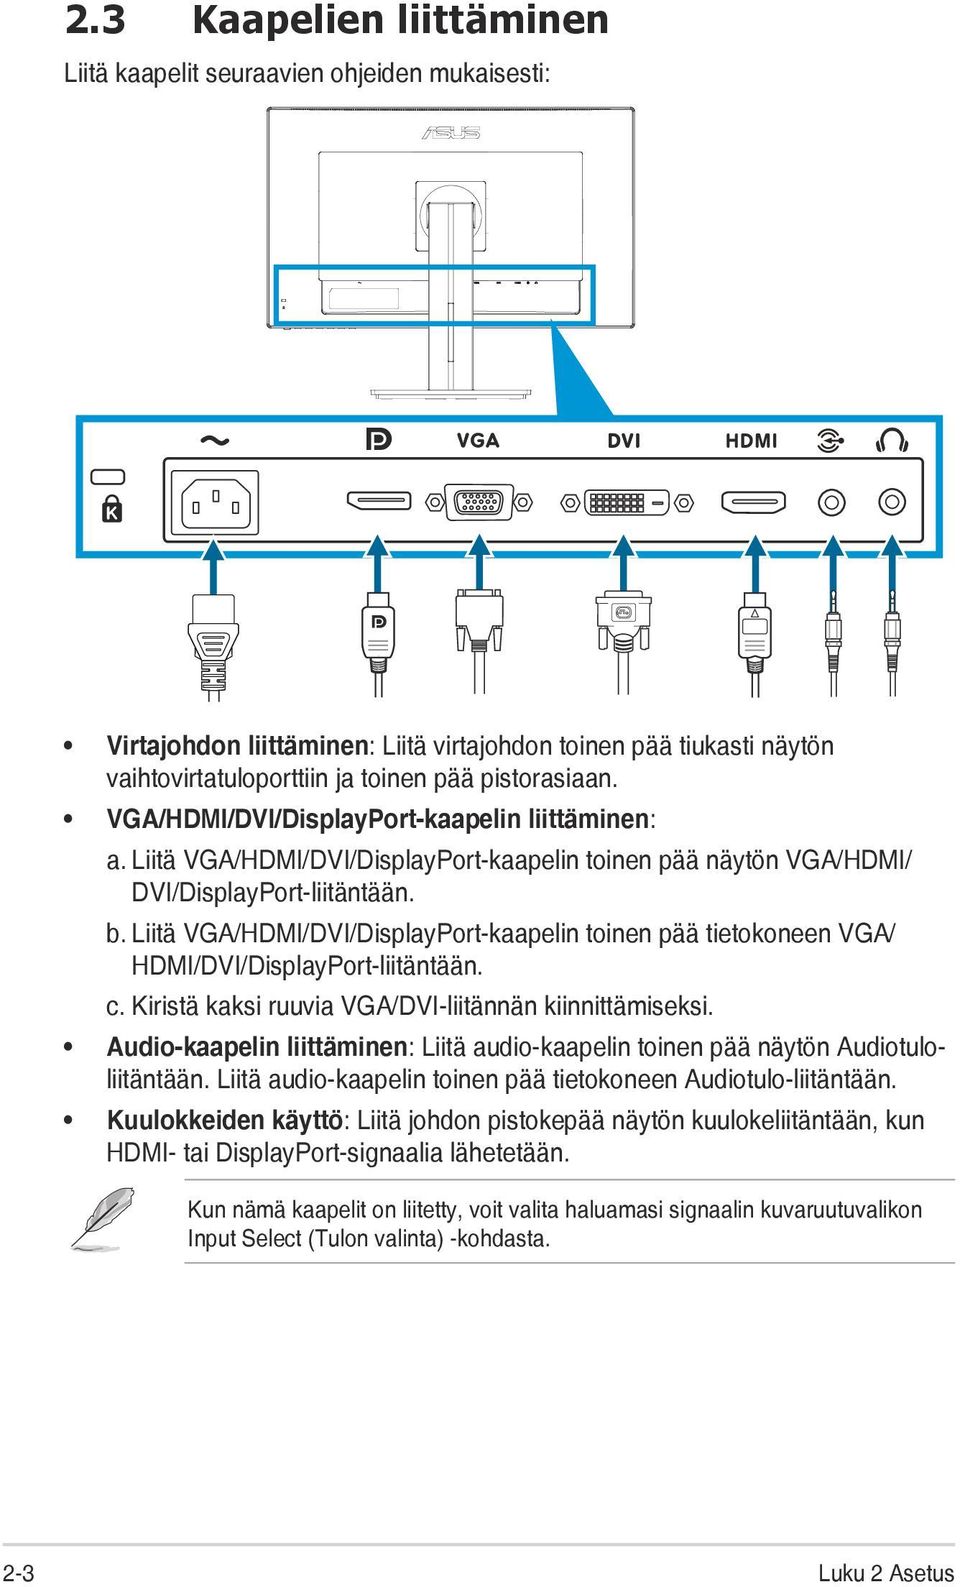 Liitä VGA/HDMI/DVI/DisplayPort-kaapelin toinen pää tietokoneen VGA/ HDMI/DVI/DisplayPort-liitäntään. c. Kiristä kaksi ruuvia VGA/DVI-liitännän kiinnittämiseksi.